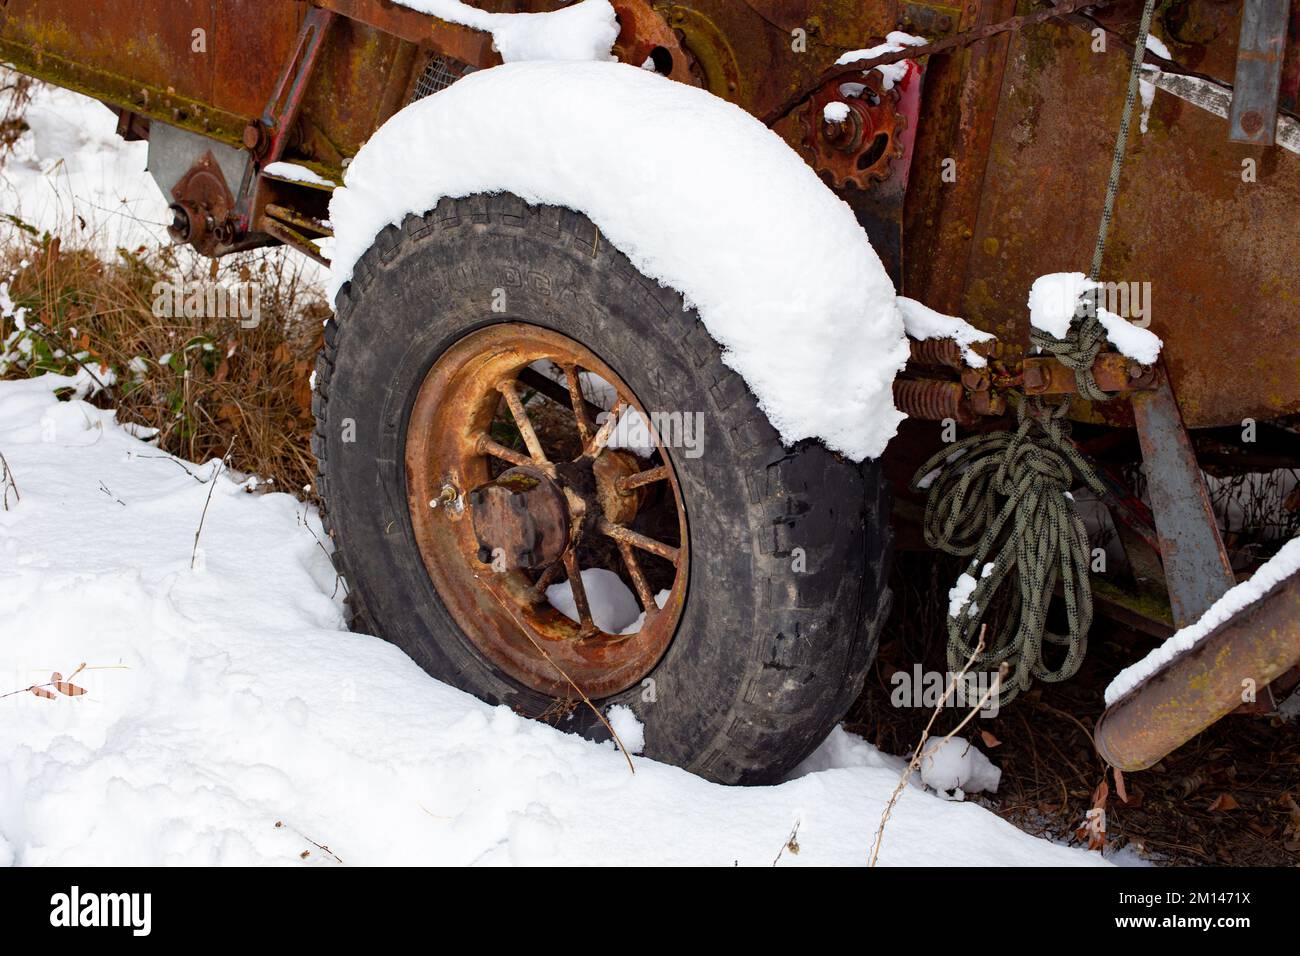 La ruota di acciaio a raggi su una arrugginita McCormick-Deering No.63 Harvester Thresher nella neve, sul bordo dei boschi, al di fuori di Bonners Ferry, Idaho. Foto Stock